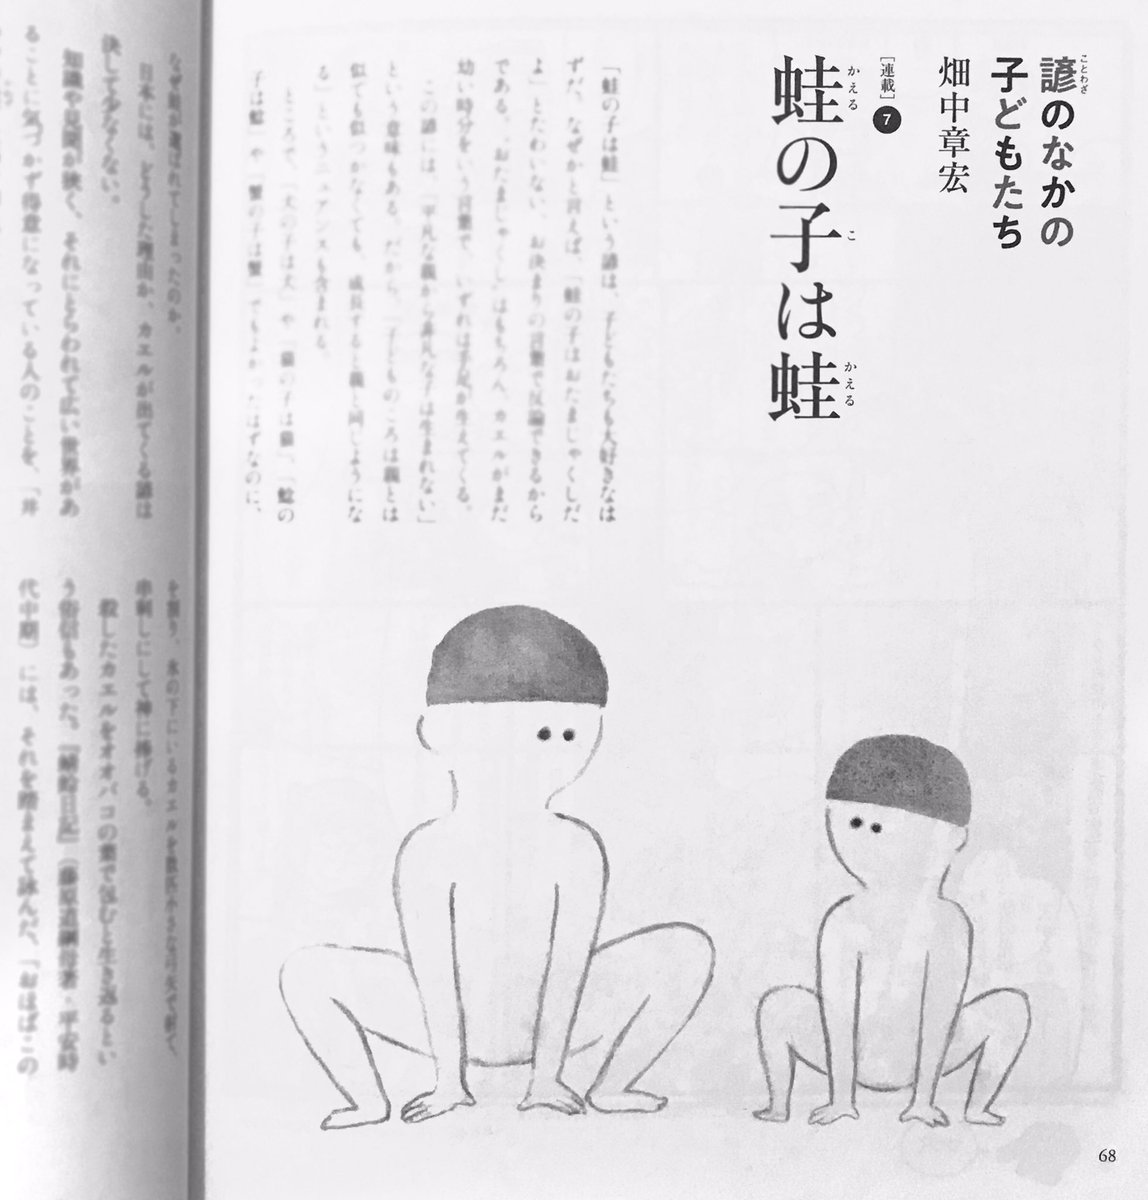 「母の友」10月号、『諺のなかの子どもたち』畑中章宏さんの連載に挿絵をかかせていただきました。今月のことわざは「蛙の子は蛙」です。蛙を描くべきか人間をかくべきか…というところでめちゃめちゃ悩みました。 